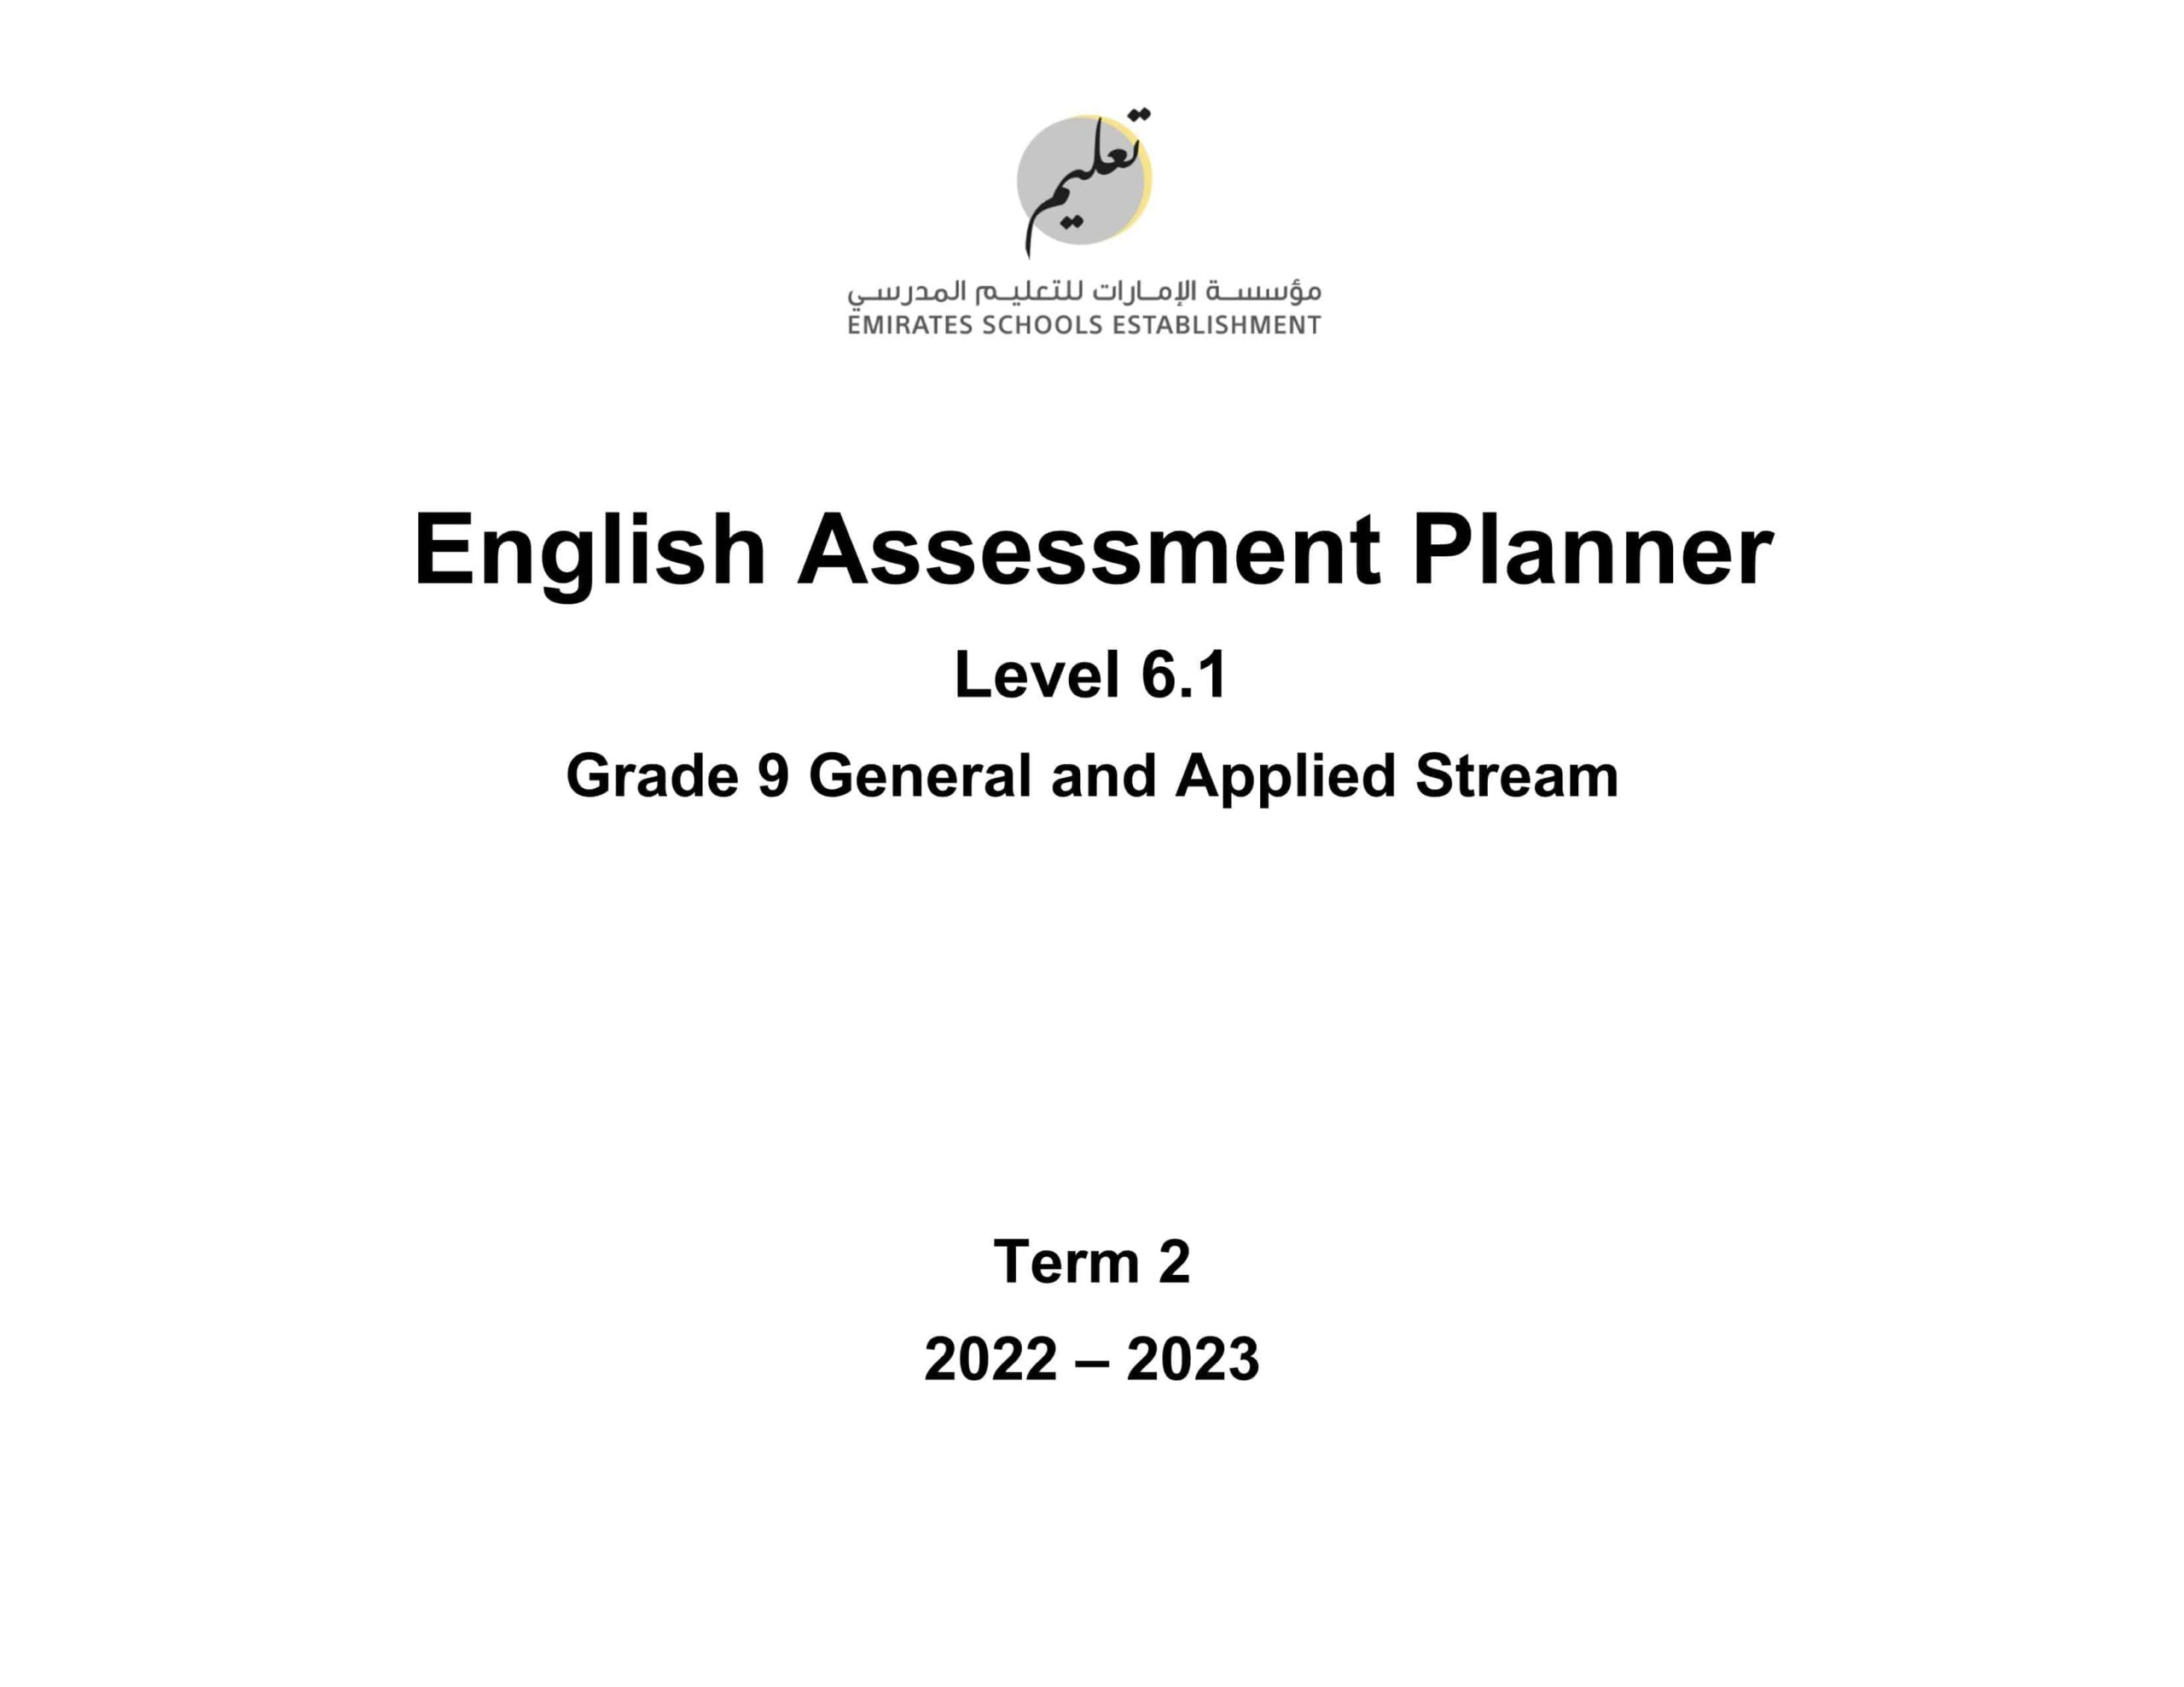 مواصفات الامتحان النهائي Level 6.1 اللغة الإنجليزية الصف التاسع General and Applied Stream الفصل الدراسي الثاني 2022-2023